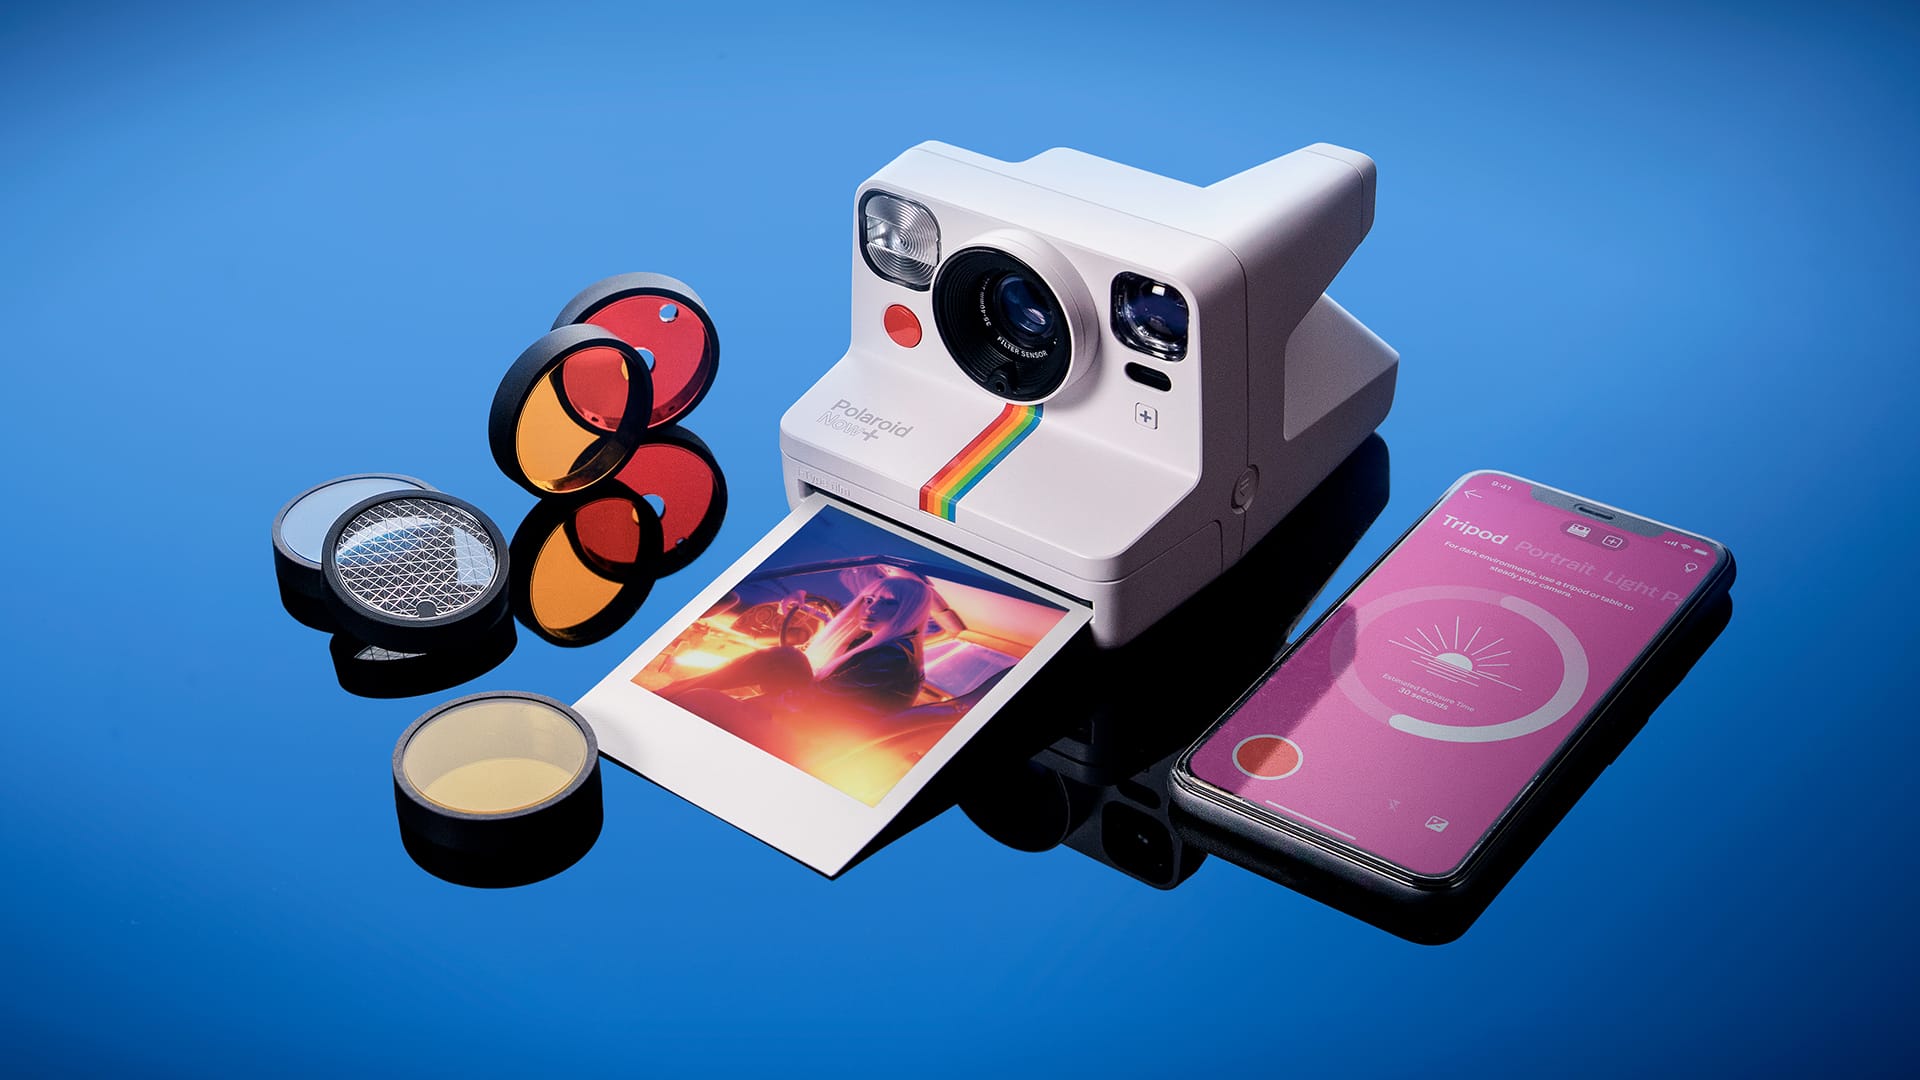 アプリとレンズフィルターを組み合わせてポラロイド写真を撮影できる「Polaroid Now+」